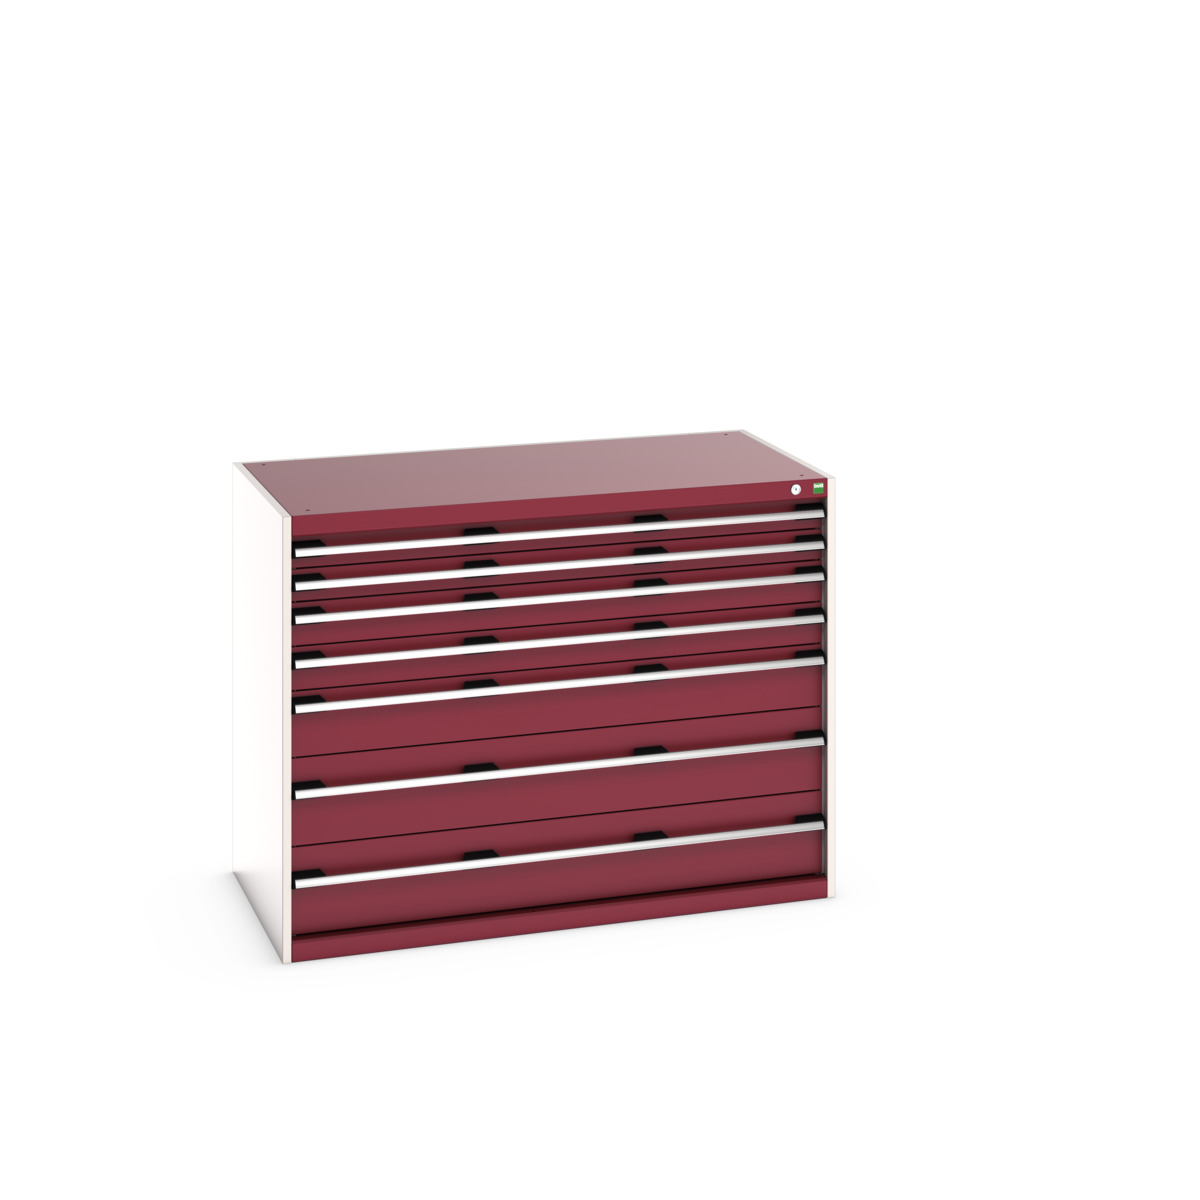 40030015.24V - cubio drawer cabinet